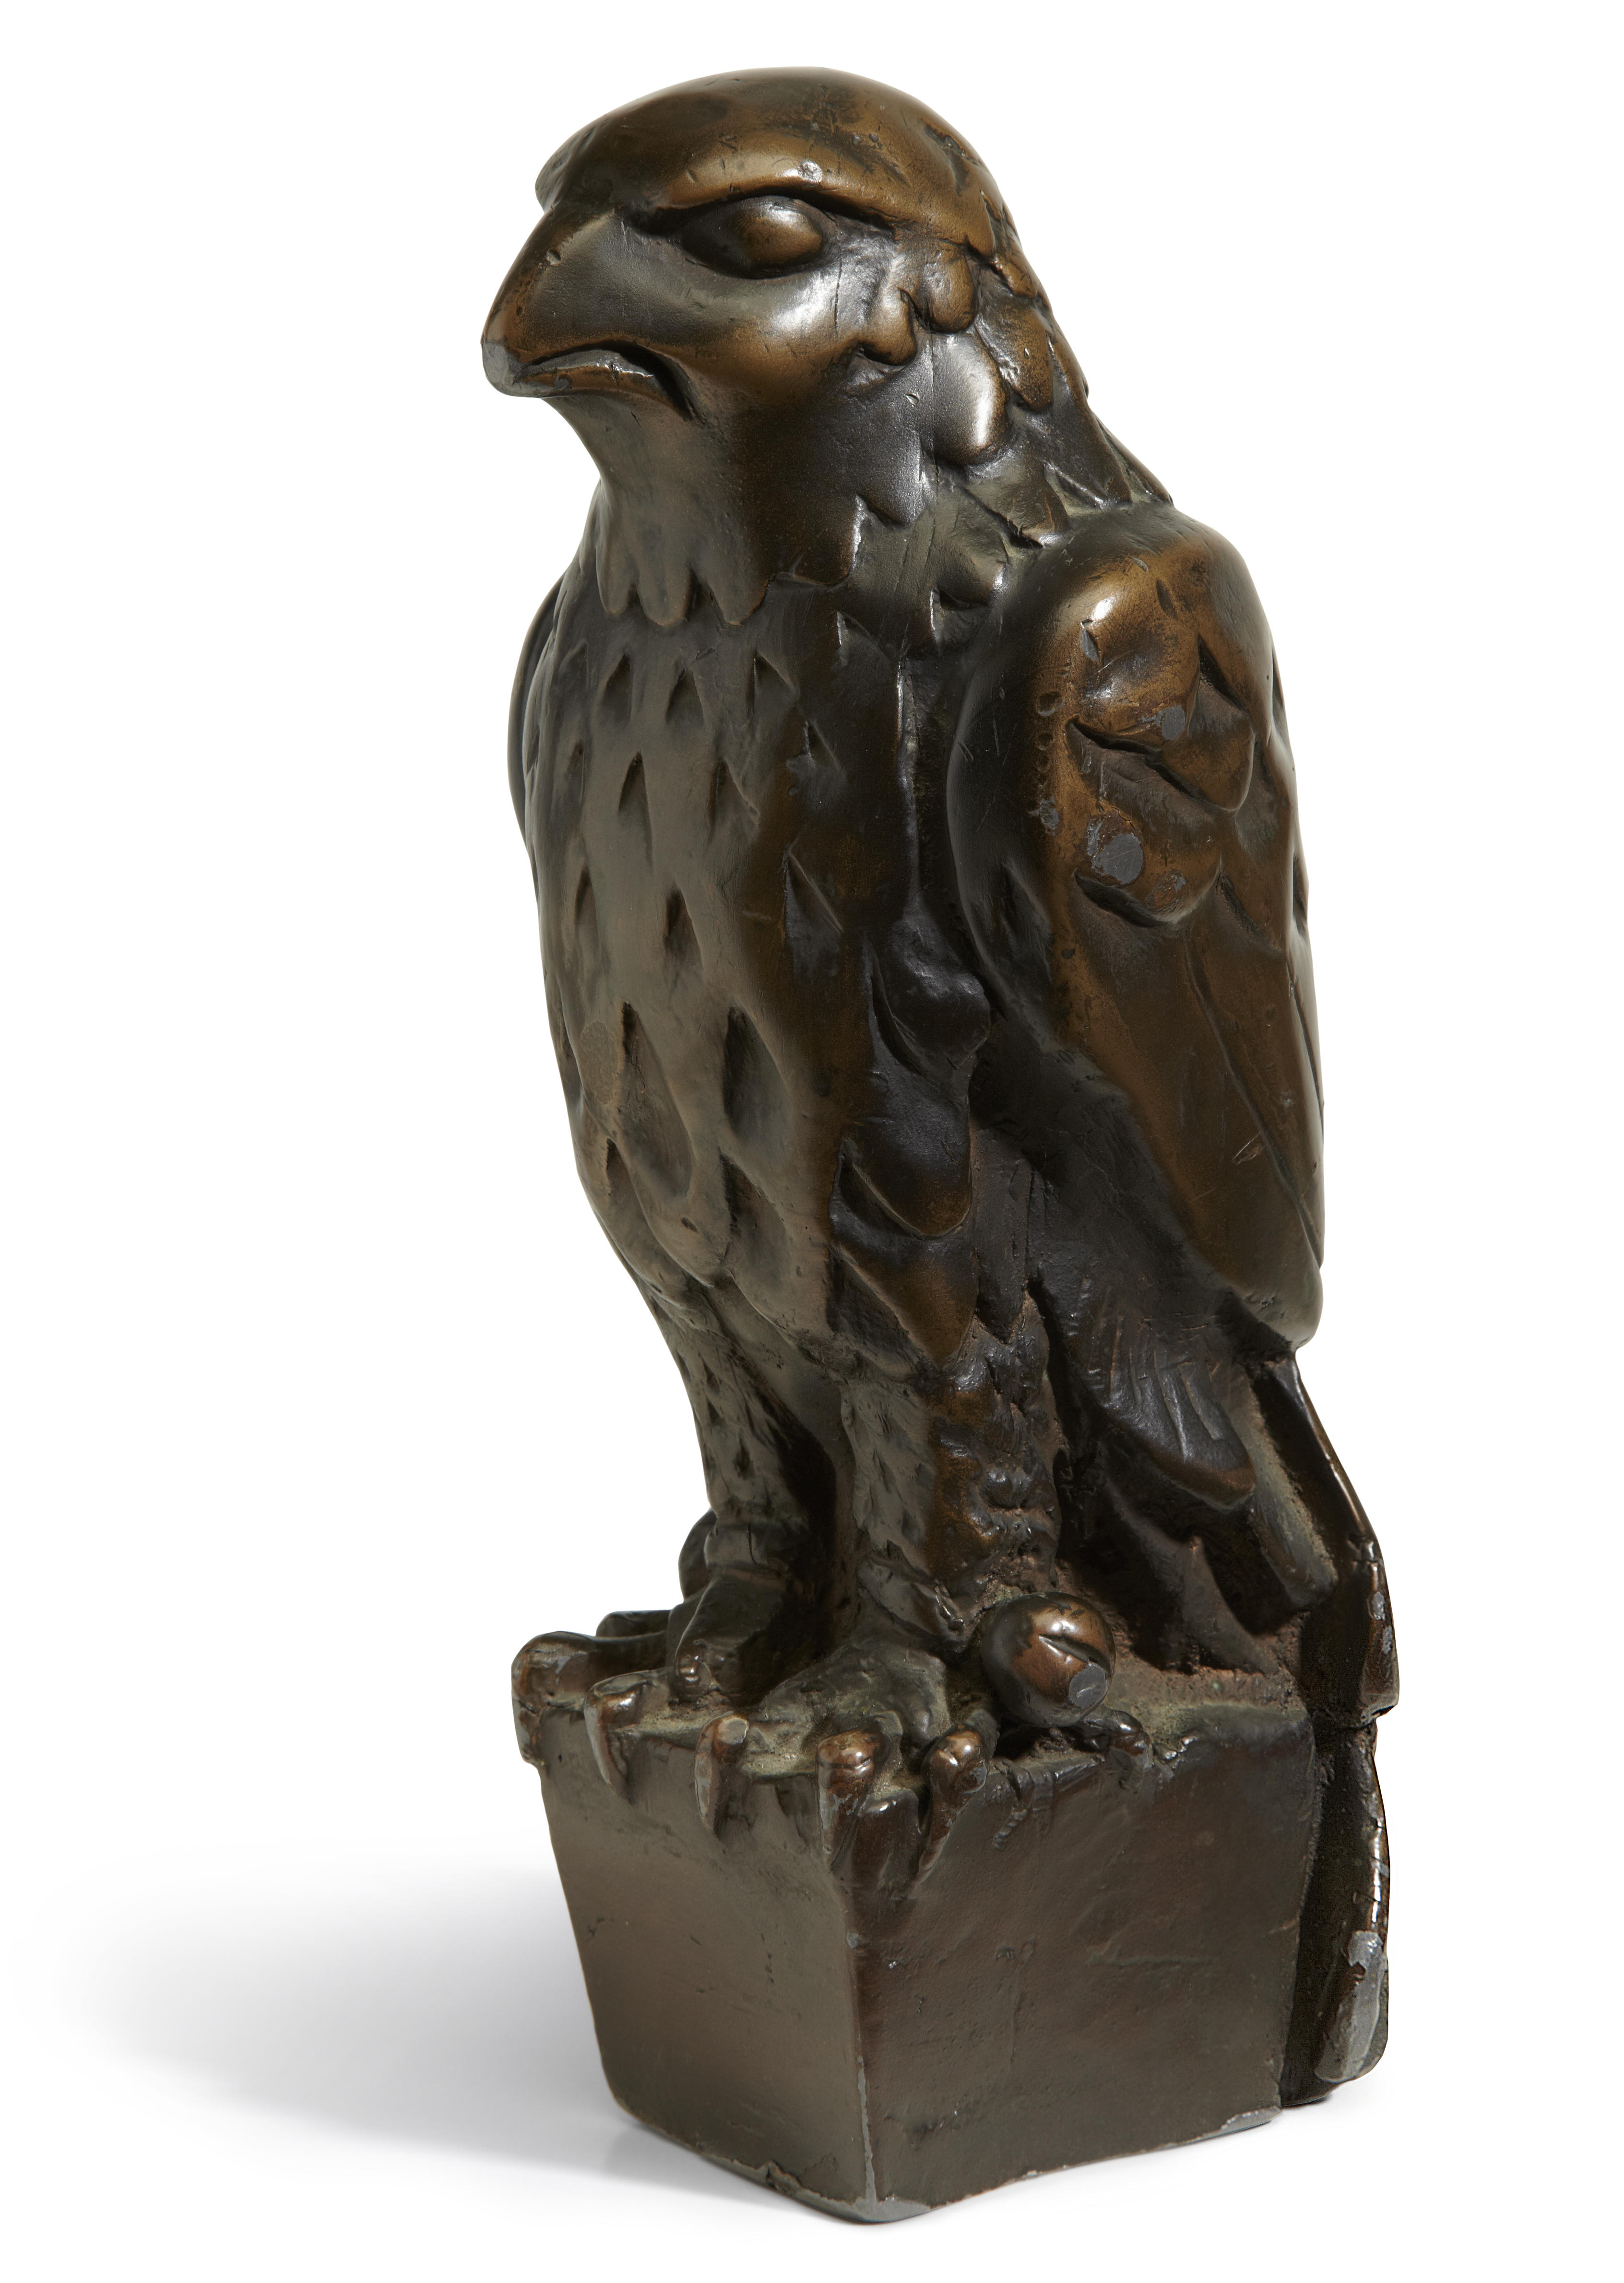 Maltese Falcon: A Triumph Bonneville cafe racer